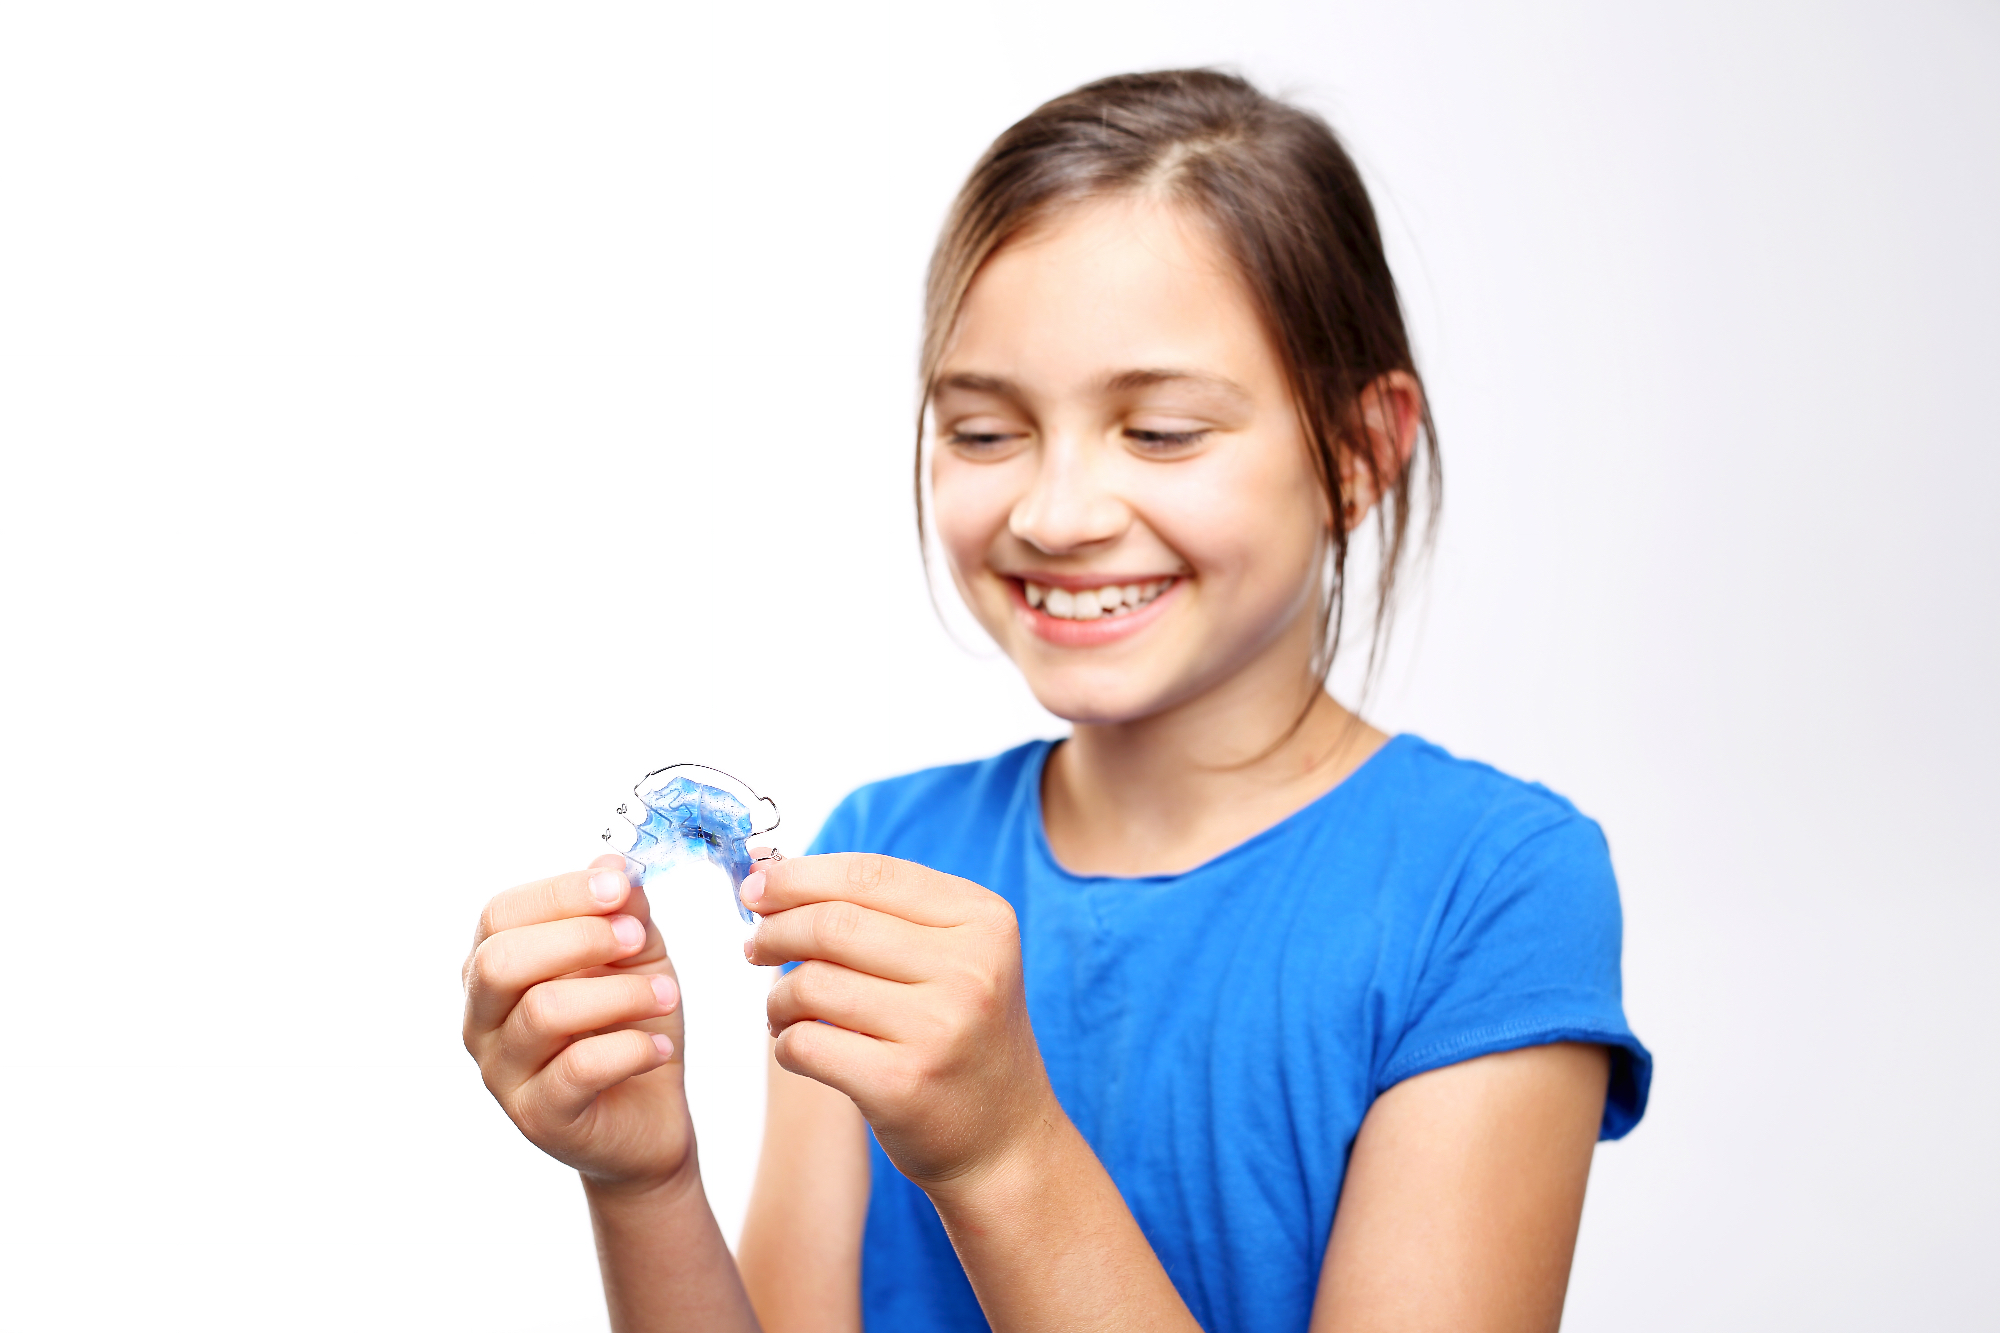 Kakovosten ortodont Ljubljana poskrbi za zdravljenje nepravilnosti v izraščanju zob otrok kot tudi odraslih